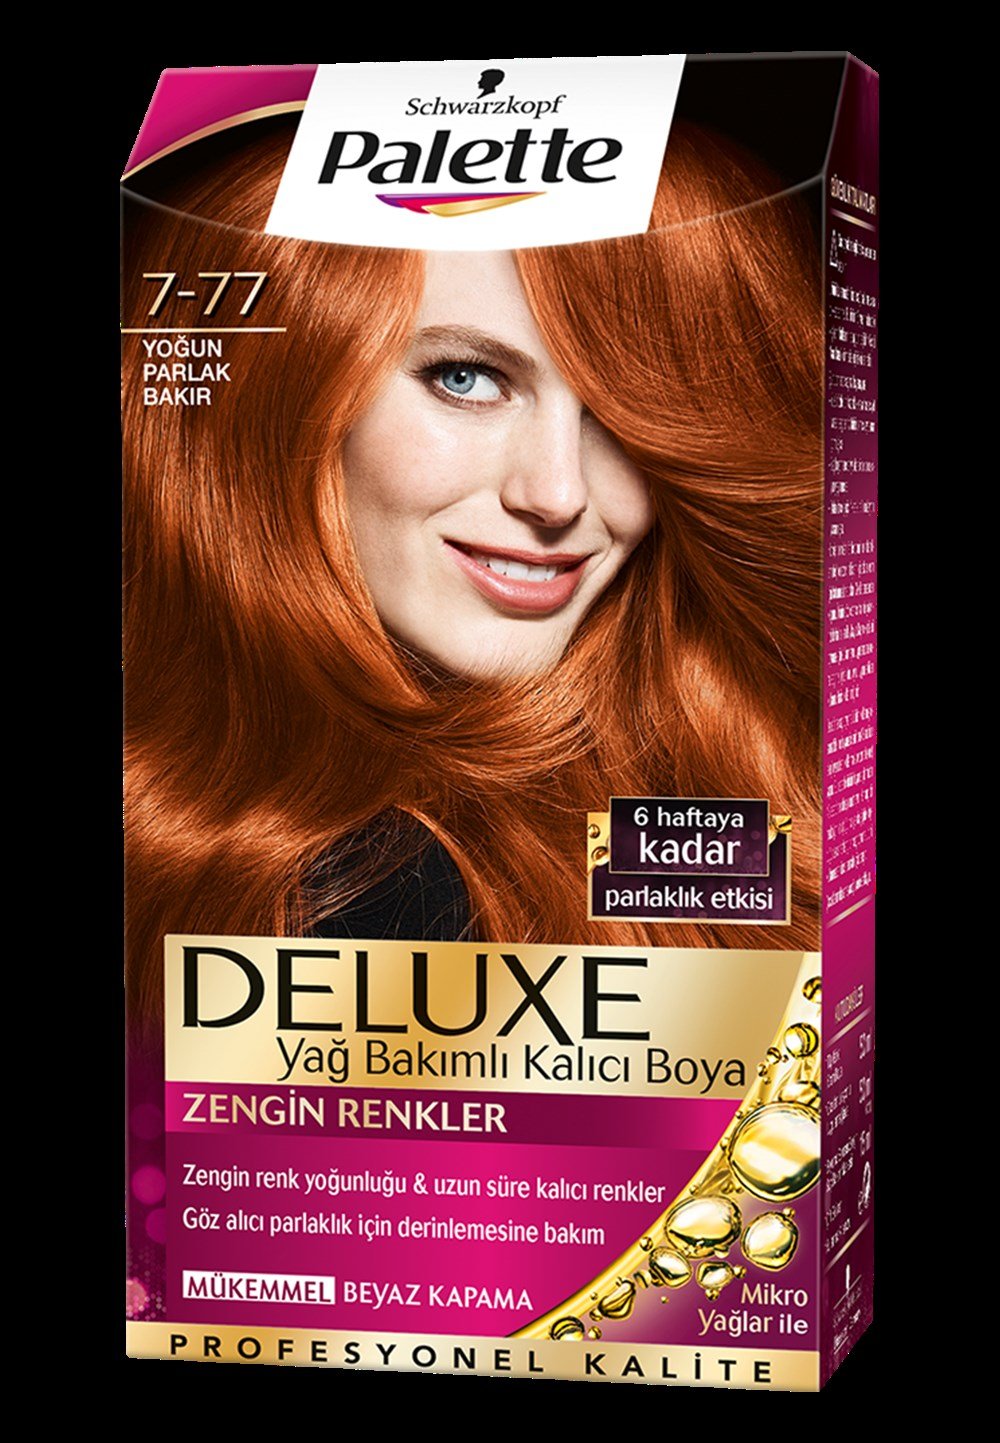 Palette Deluxe Saç Boyası 7-77 Yoğun Parlak Bakır | Netegir.com